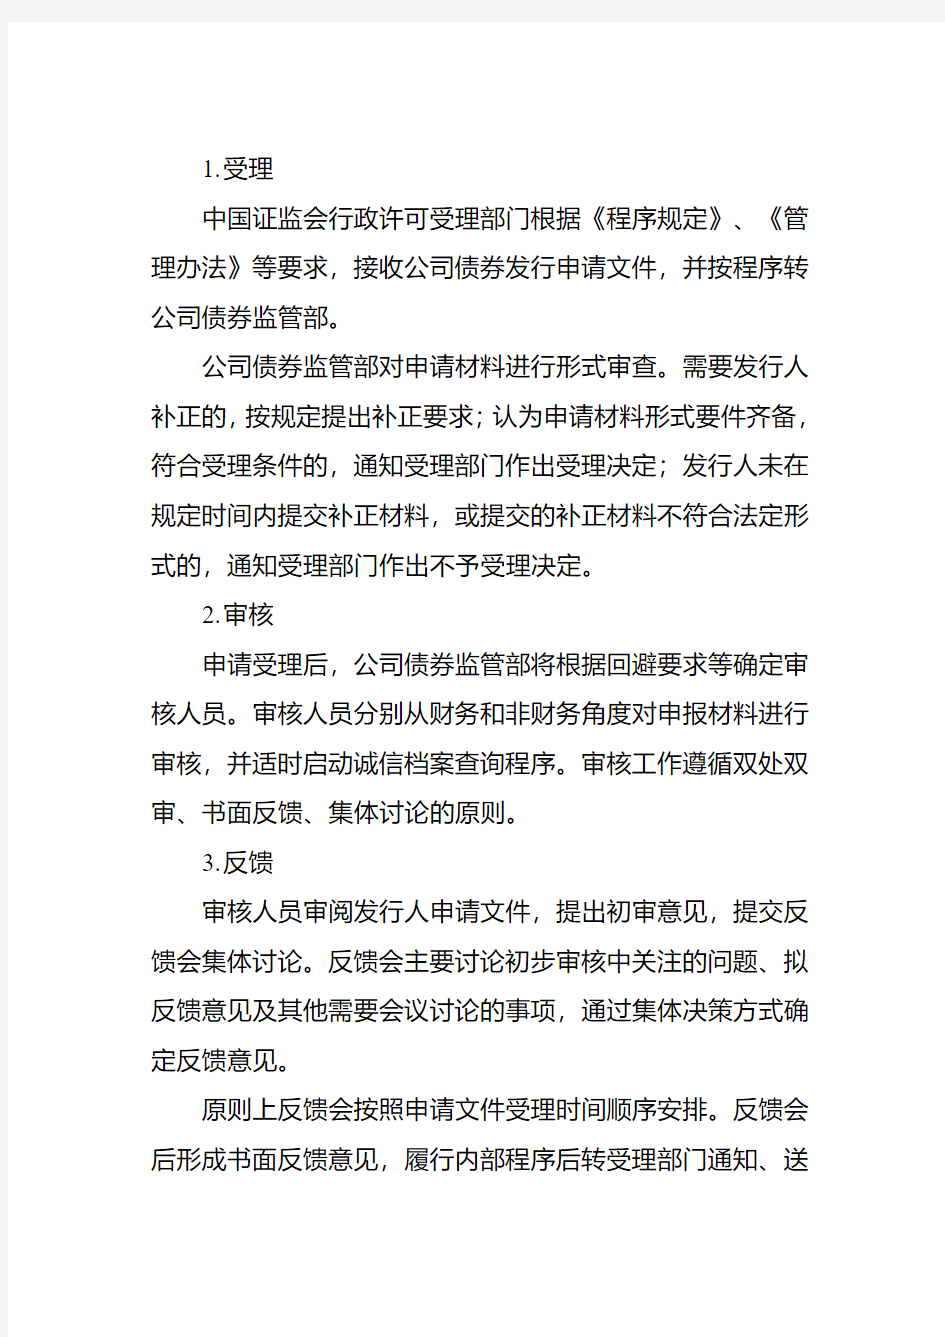 中国证监会公开发行公司债券审核工作流程资料